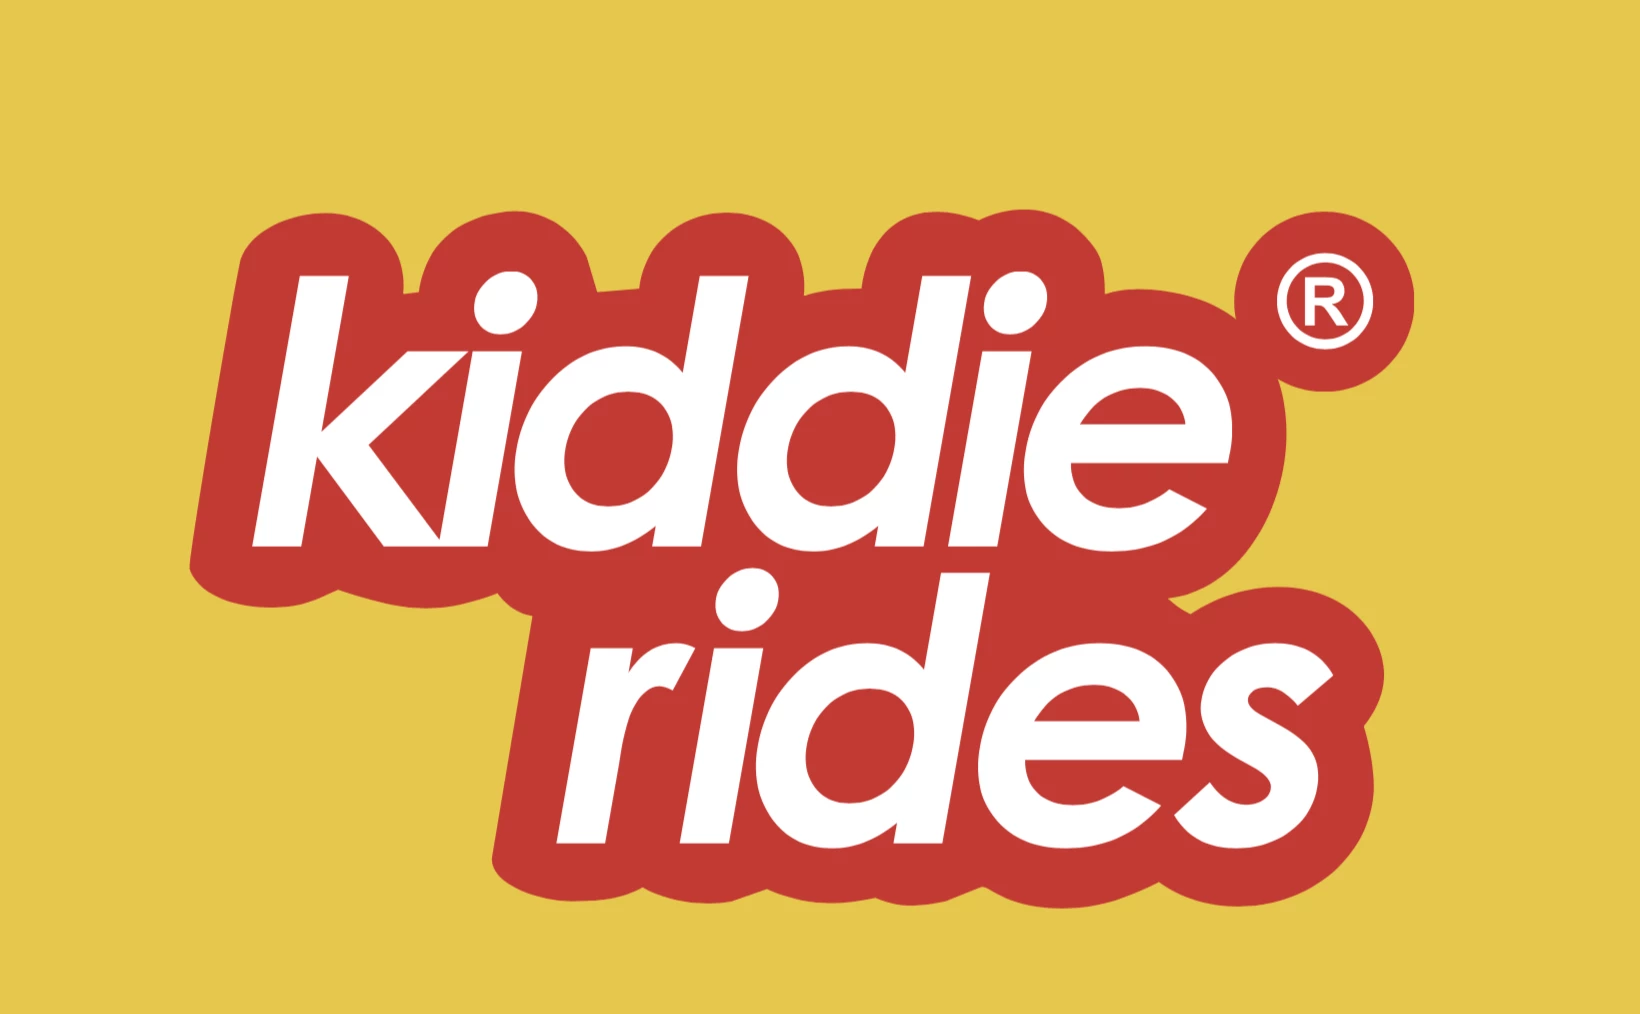 Kiddie Rides